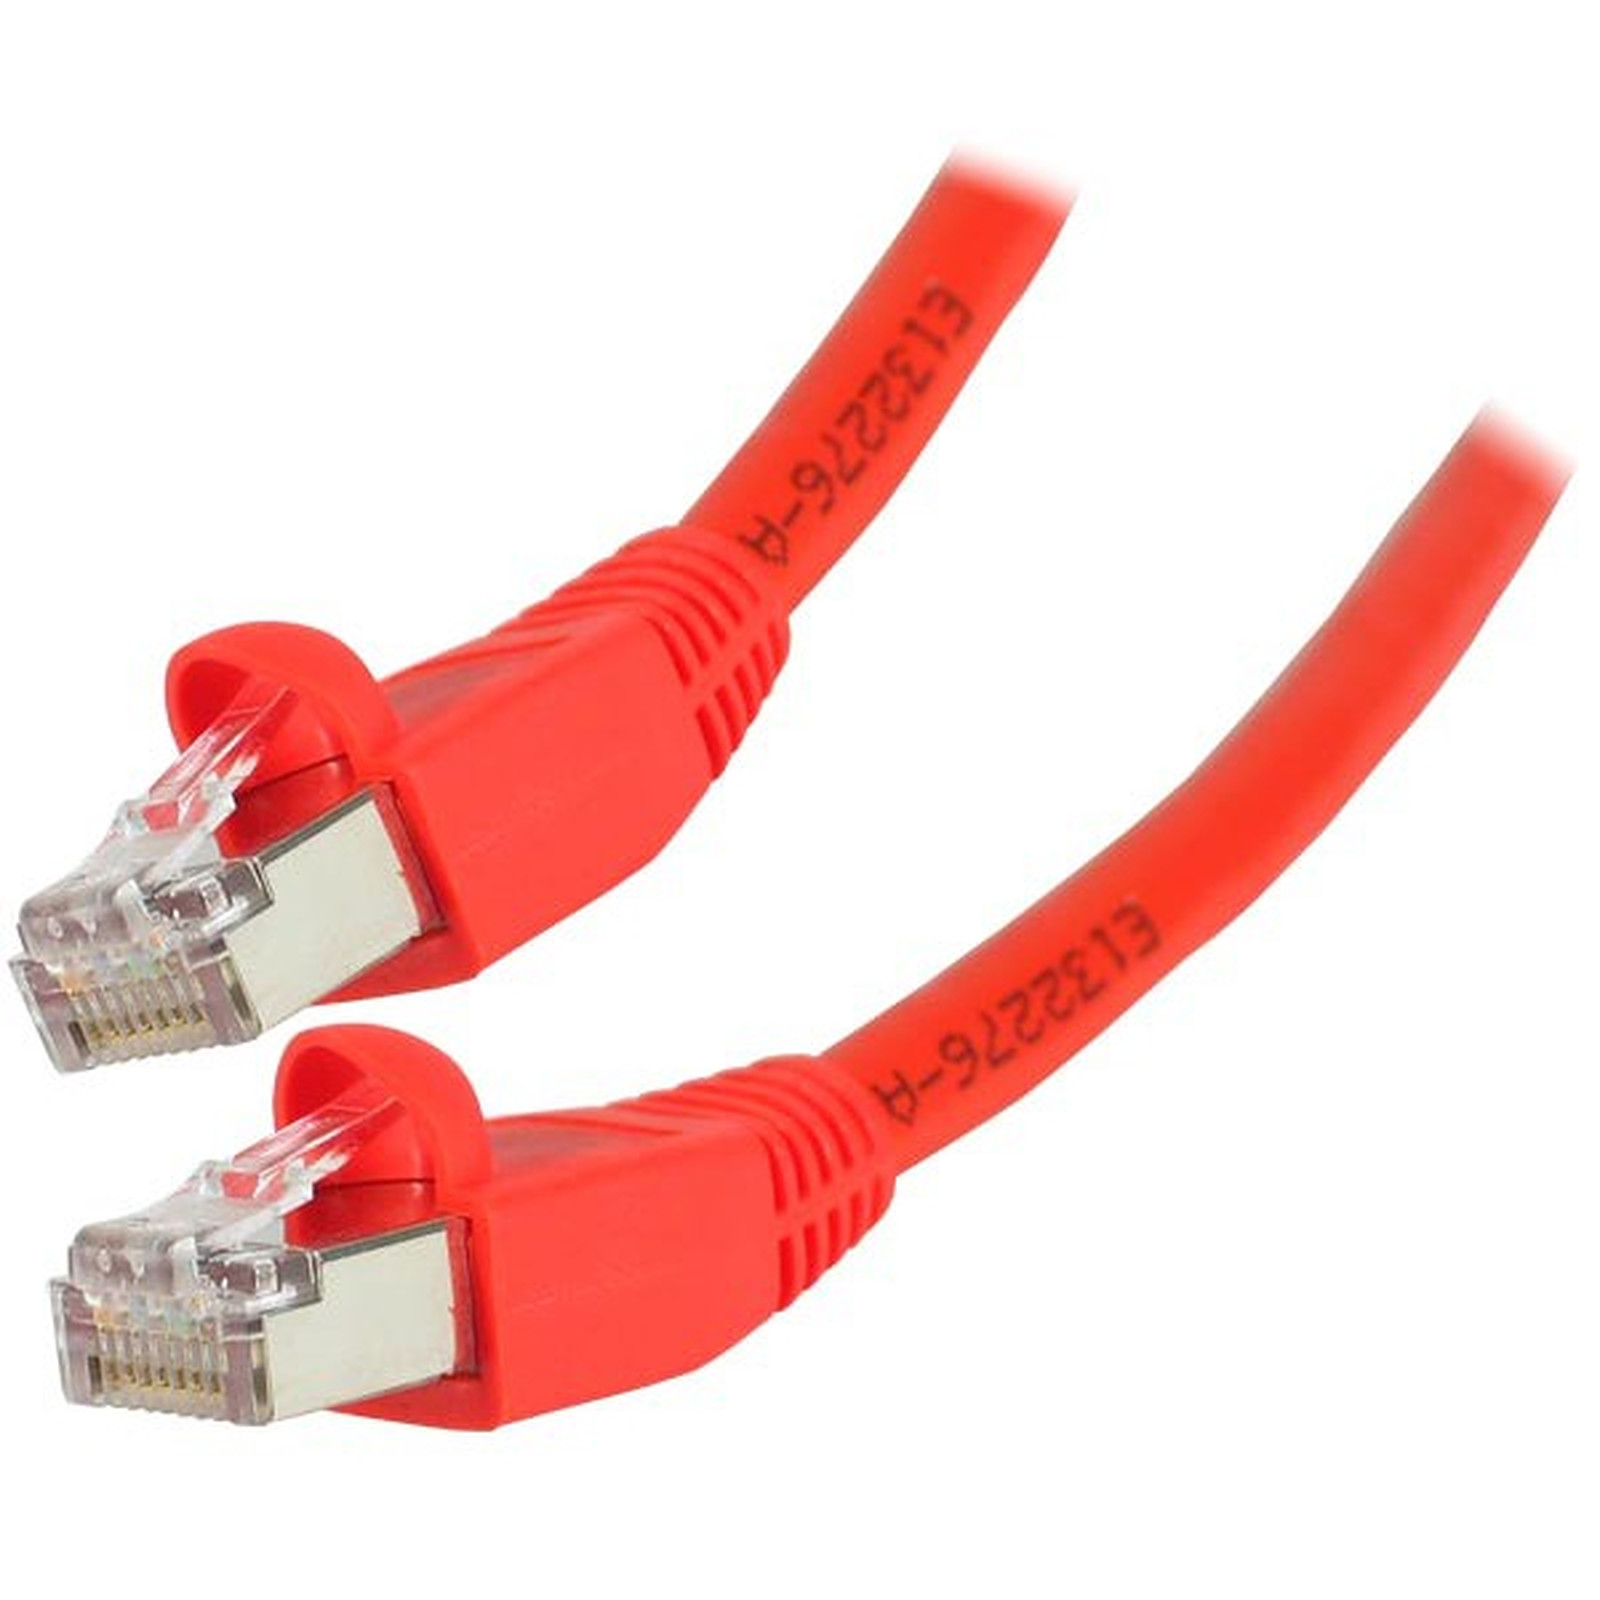 Cable RJ45 categorie 6 S/FTP 20 m (Rouge) - Cable RJ45 Generique